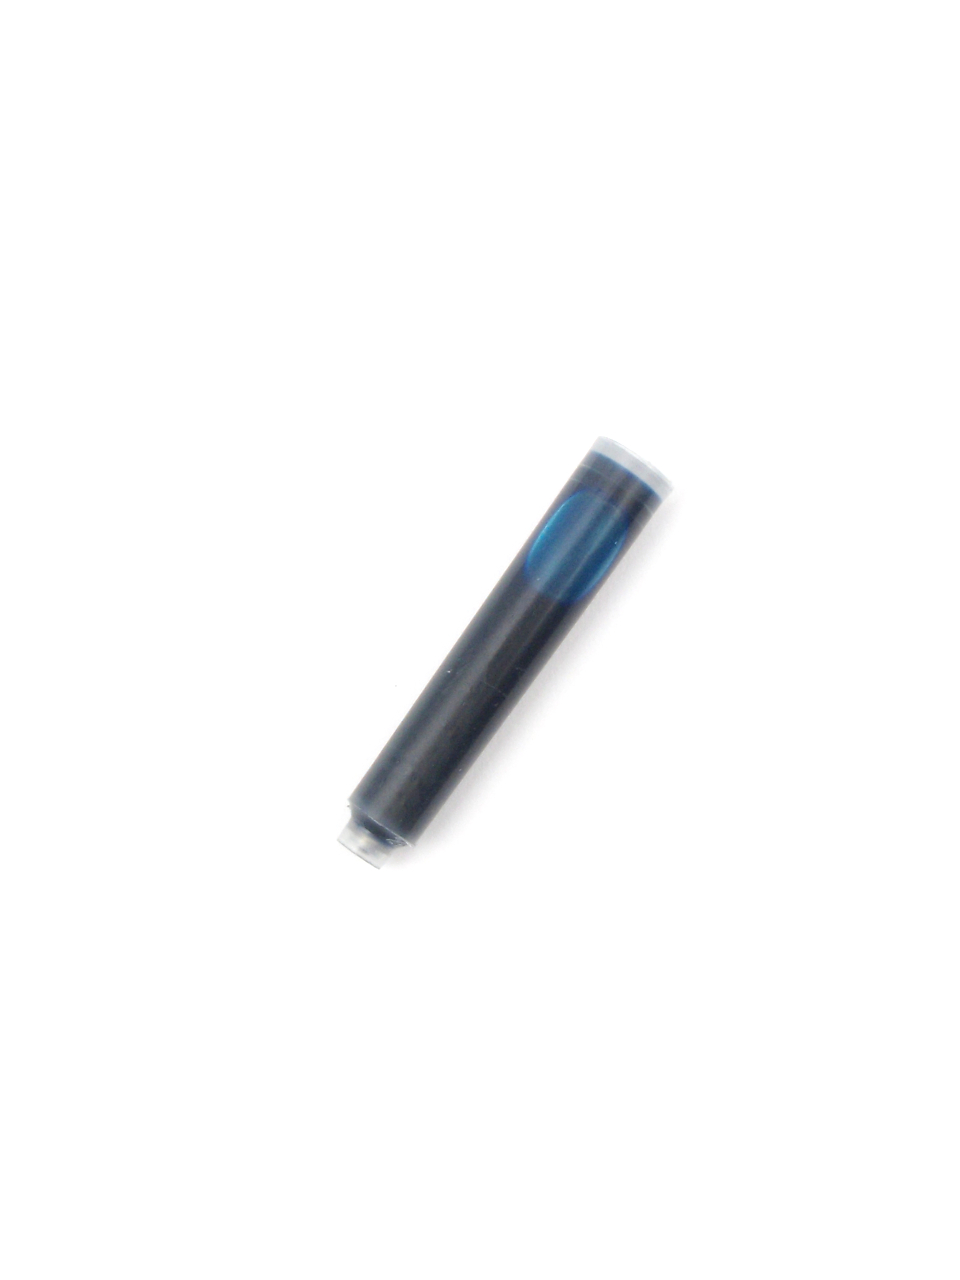 Begunstigde Voorganger Afdrukken Ink Cartridges For Fuliwen Fountain Pens (Turquoise) - Pen Converter